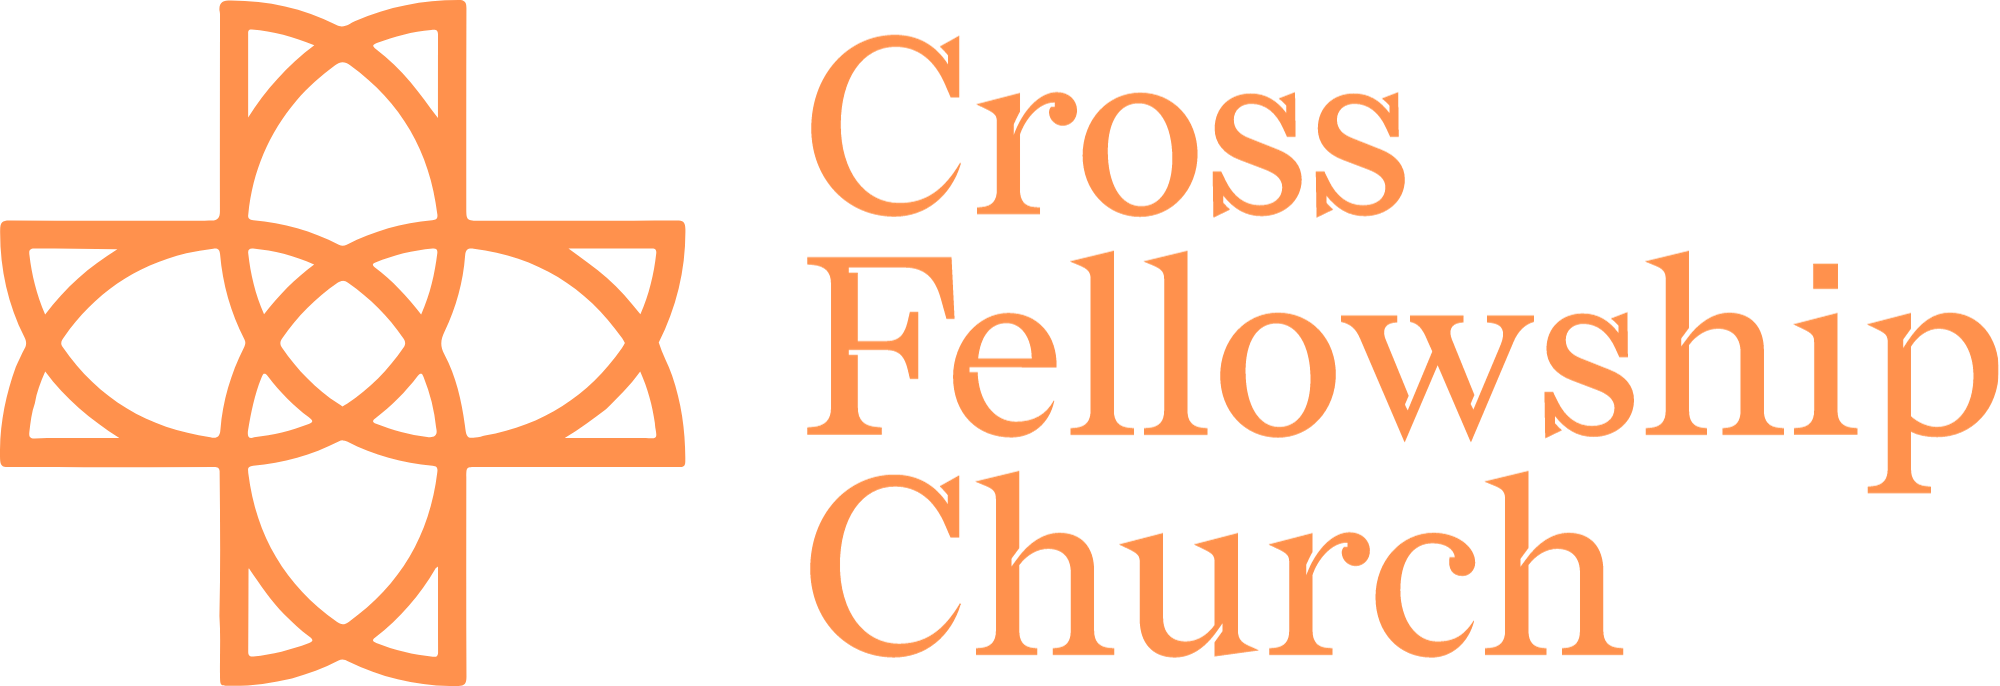 CROSS FELLOWSHIP CHURCH